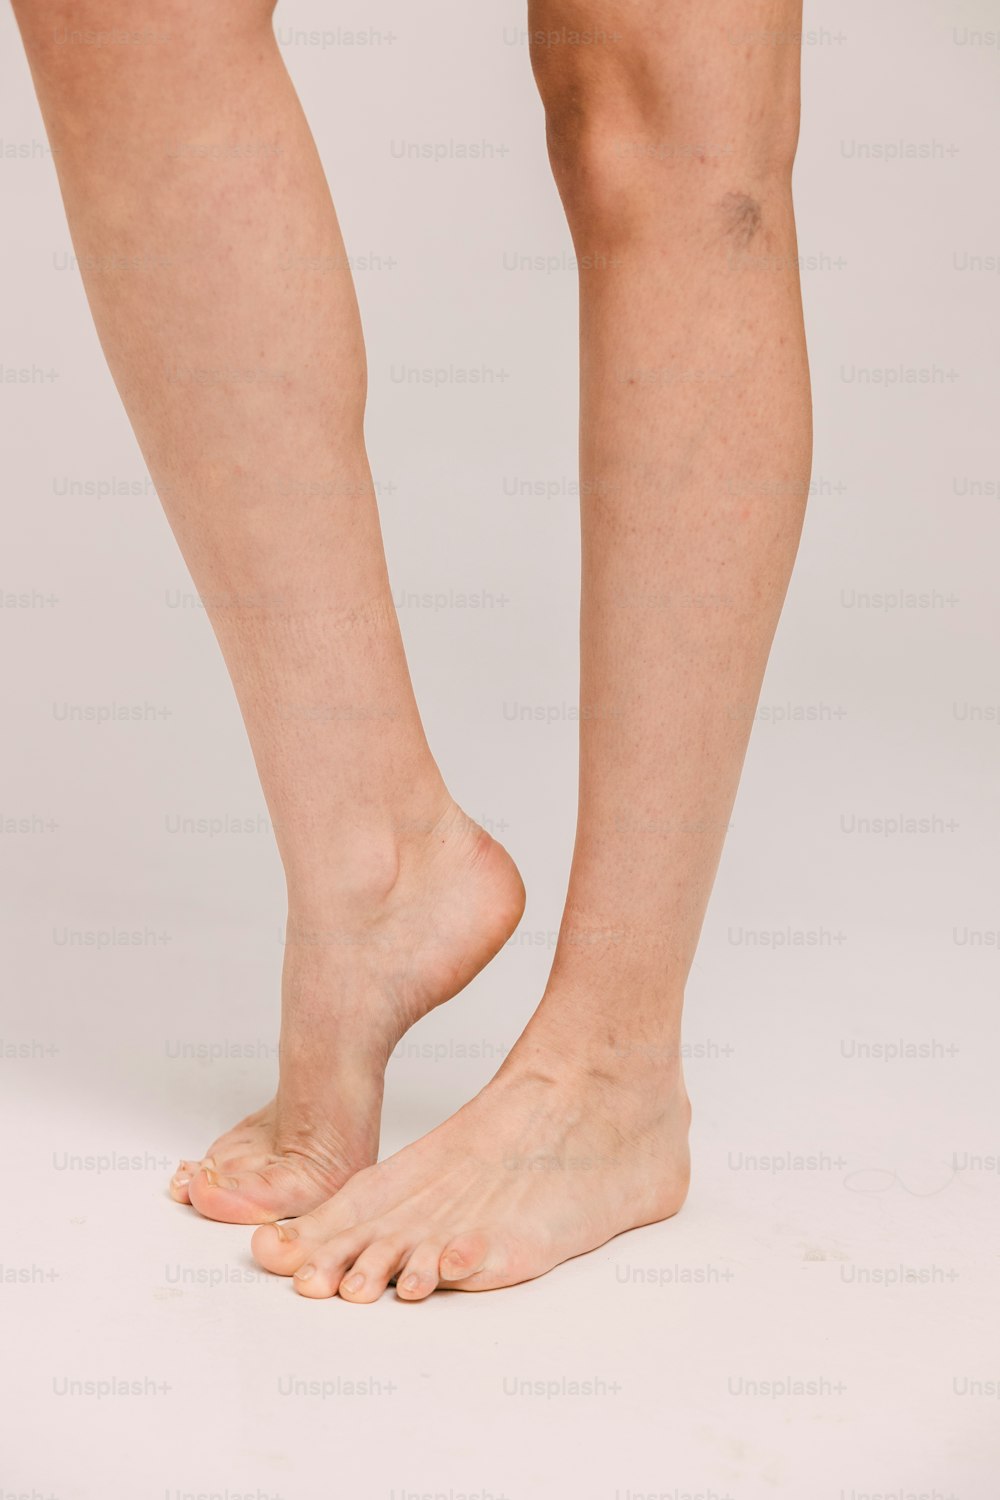 uma pessoa de pé em uma superfície branca com os pés descalços